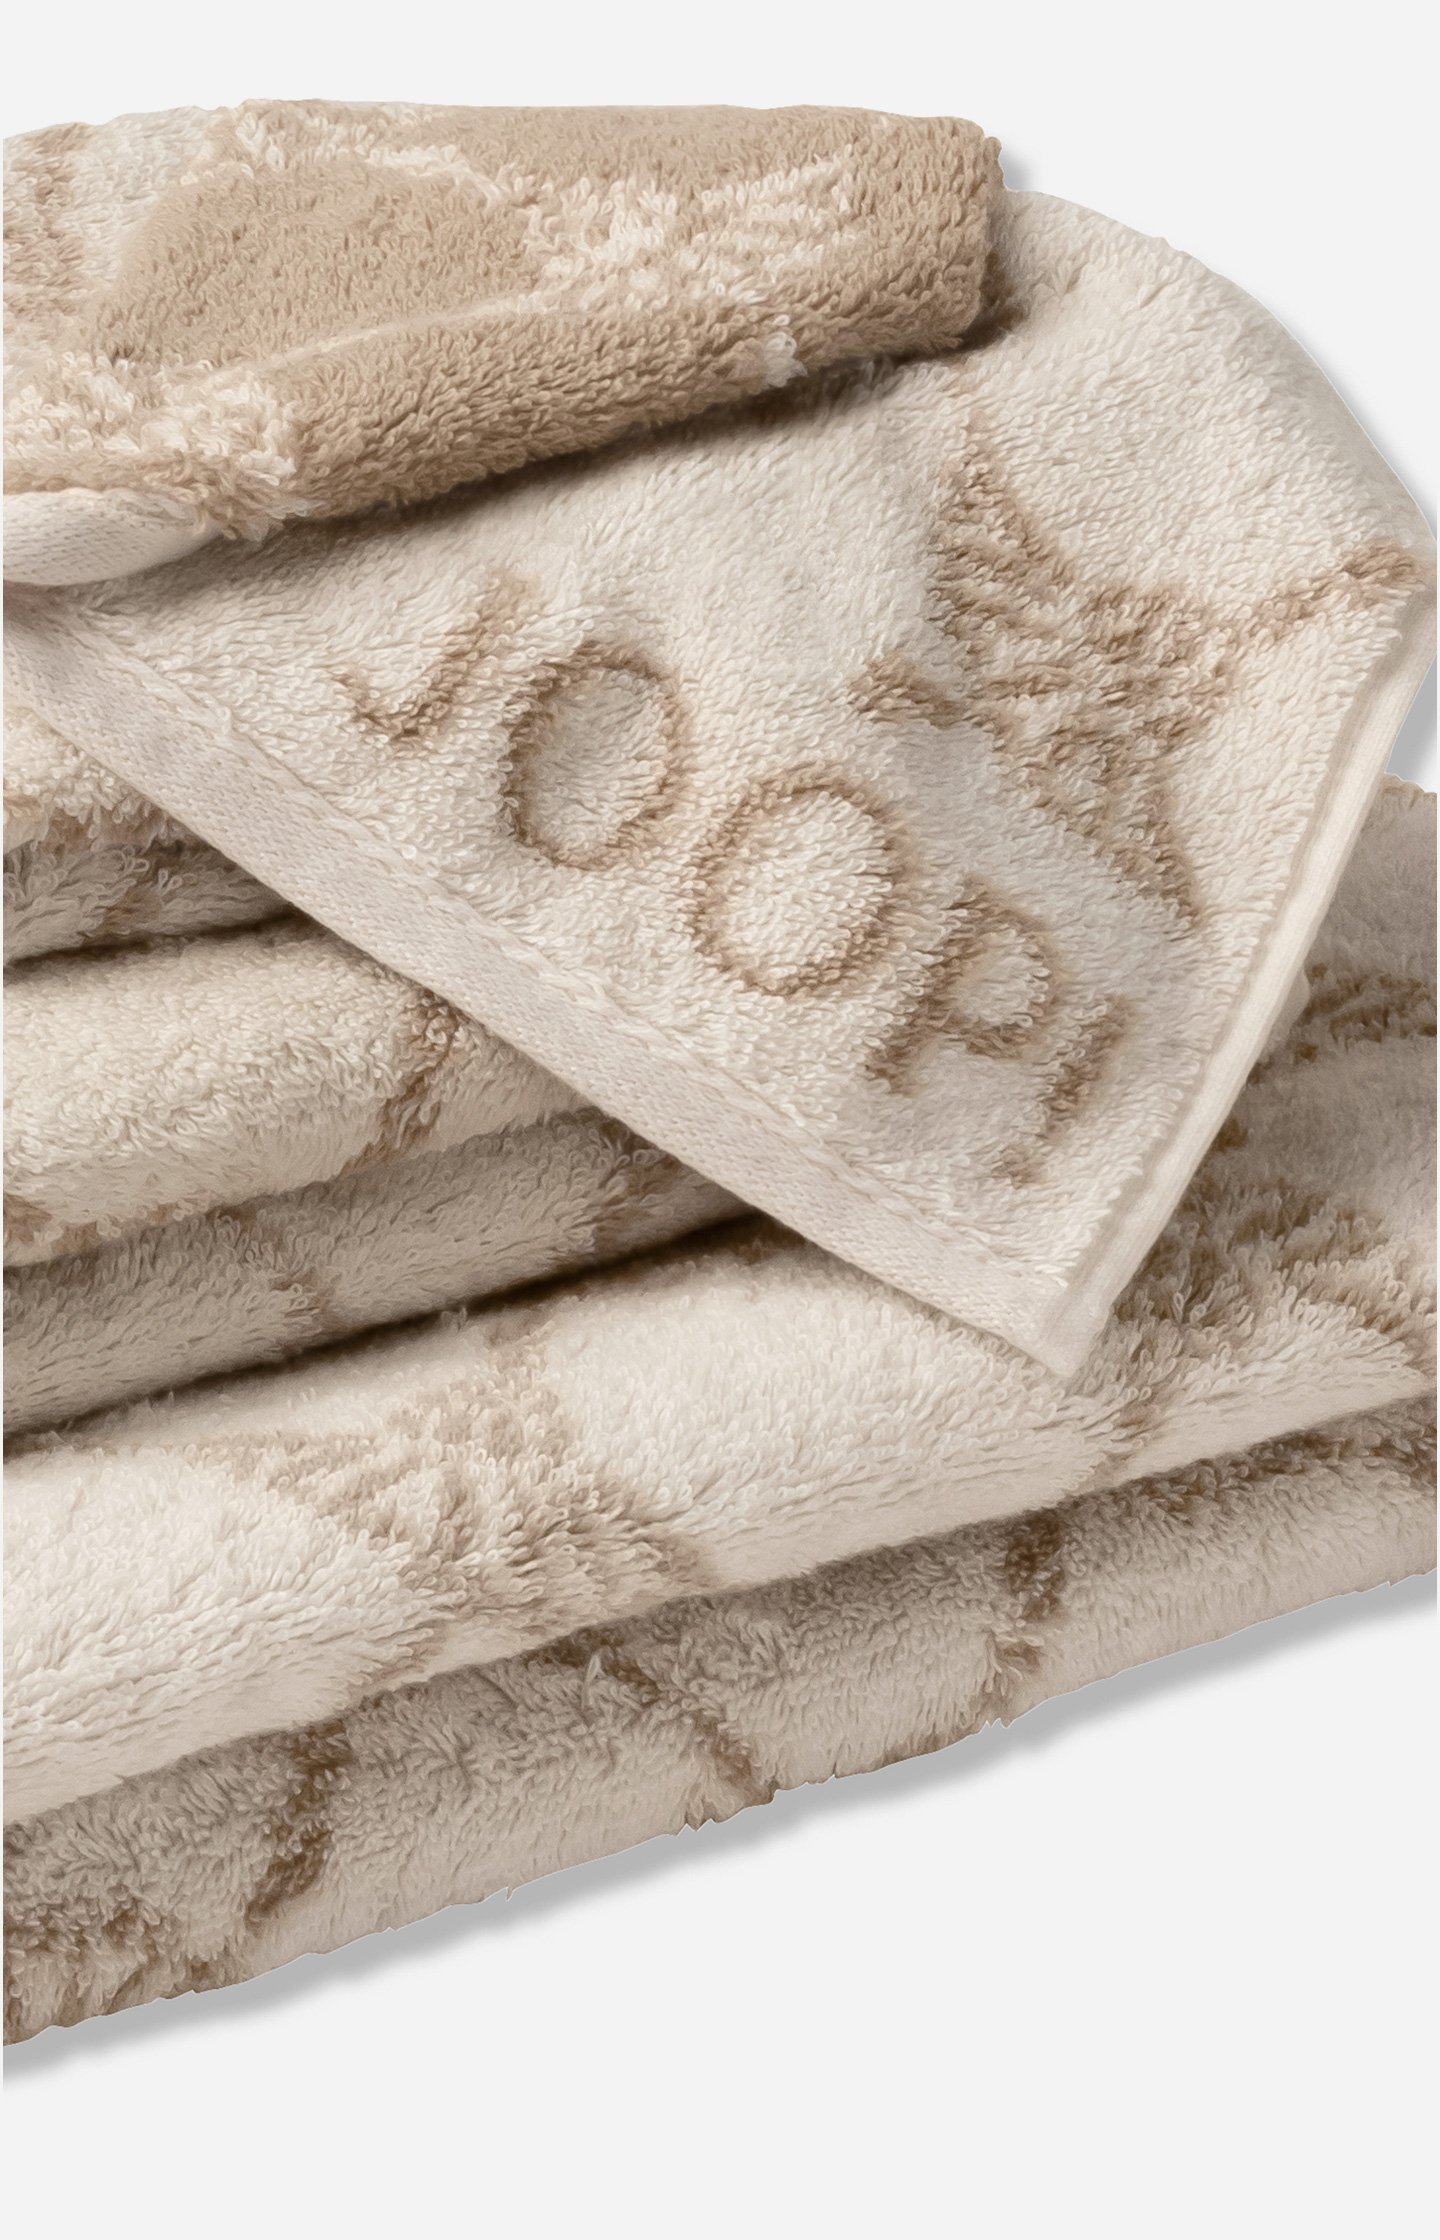 JOOP! CLASSIC CORNFLOWER Towel in Cream - in the JOOP! Online Shop